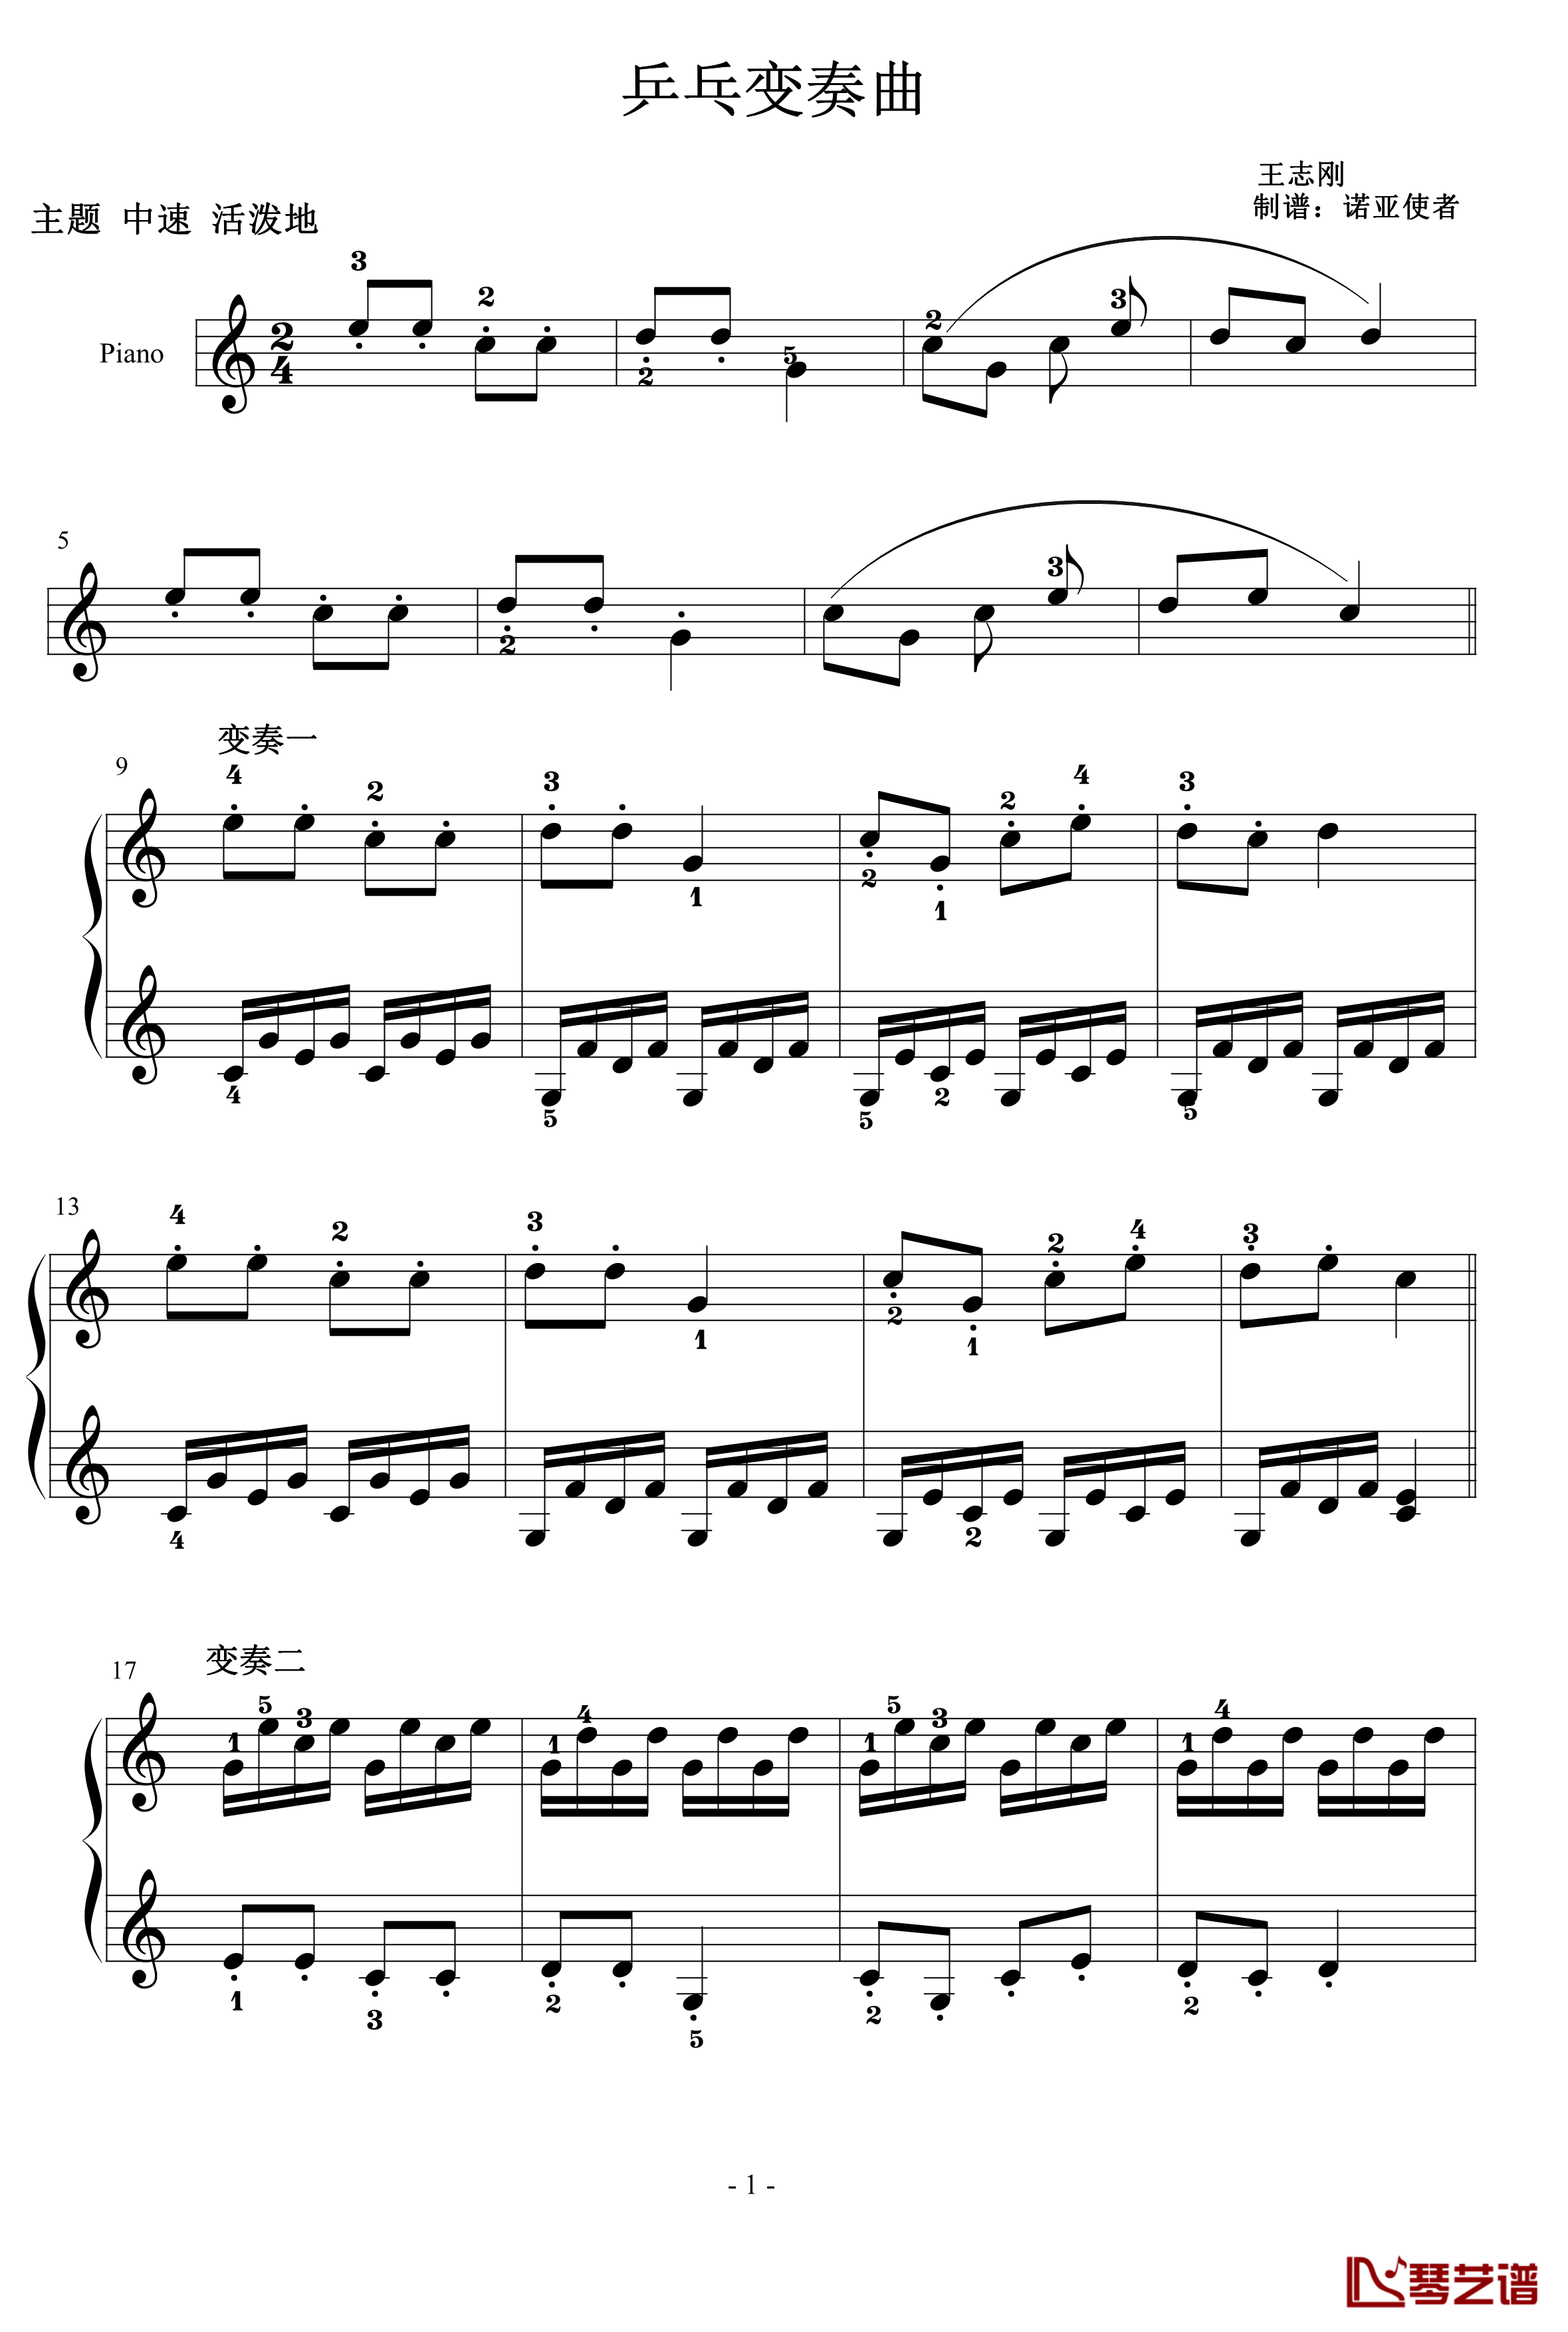 乒乓变奏曲钢琴谱-儿童歌曲1